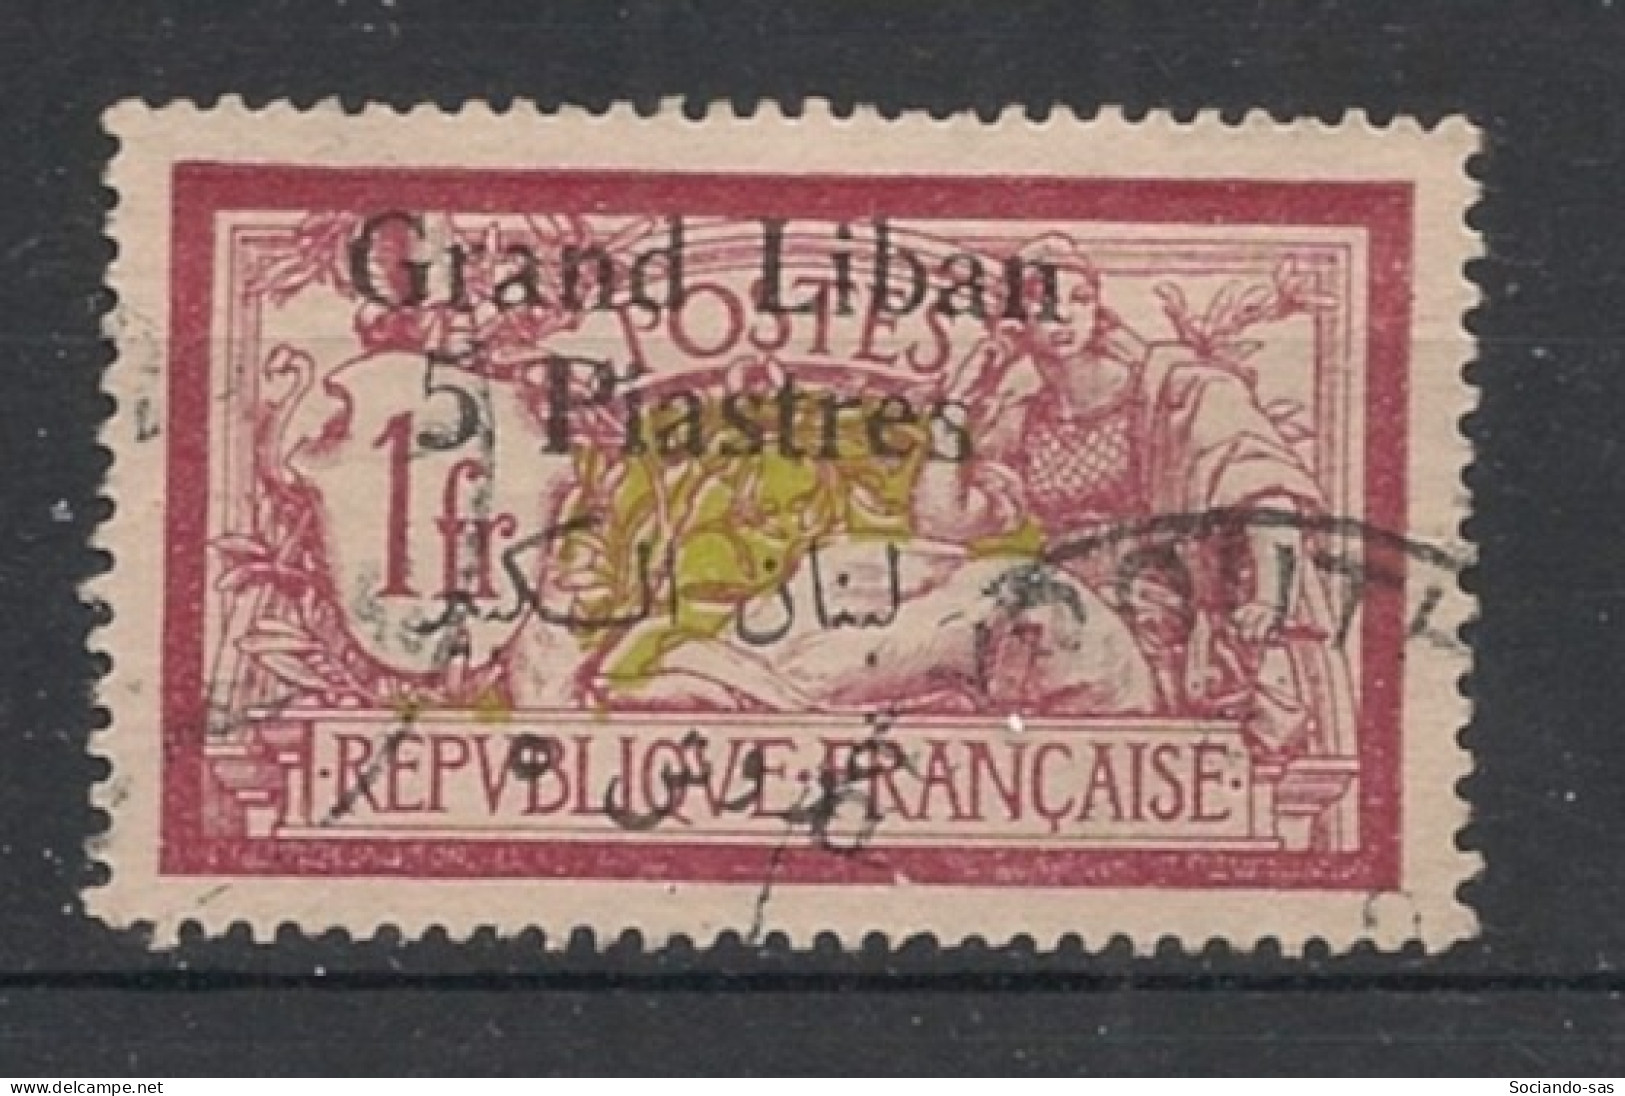 GRAND LIBAN - 1924-25 - N°YT. 36 - Type Merson 5pi Sur 1f Lie-de-vin - Oblitéré / Used - Oblitérés